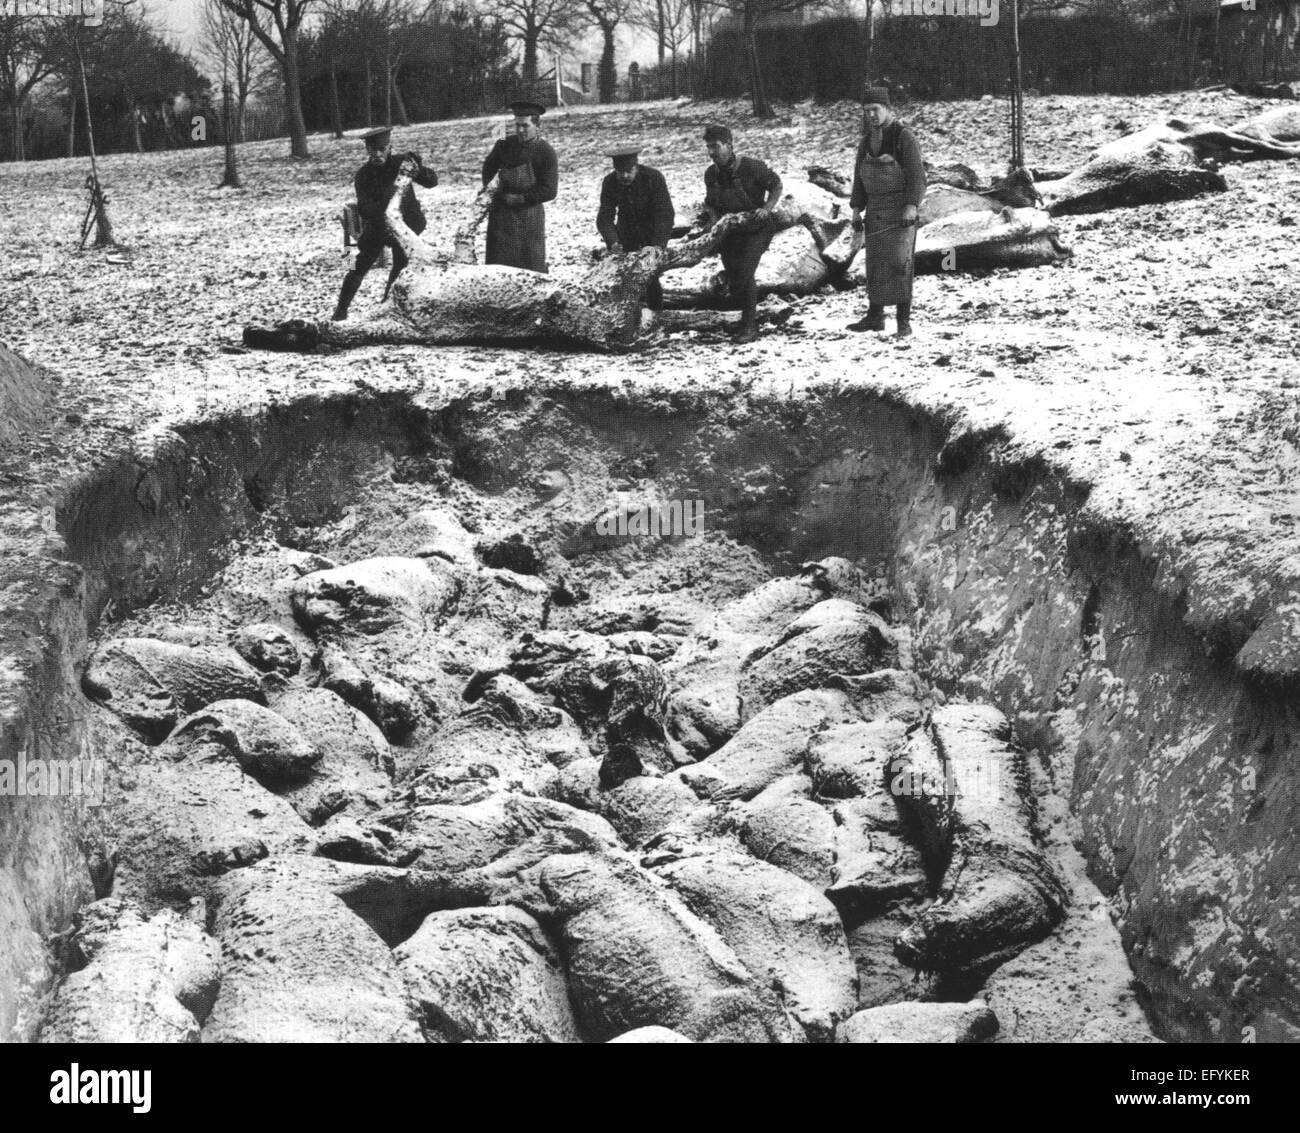 Première Guerre mondiale l'enterrement de masse de chevaux en hiver 1916 par les soldats britanniques. Emplacement inconnu. Photo officielle britannique Banque D'Images